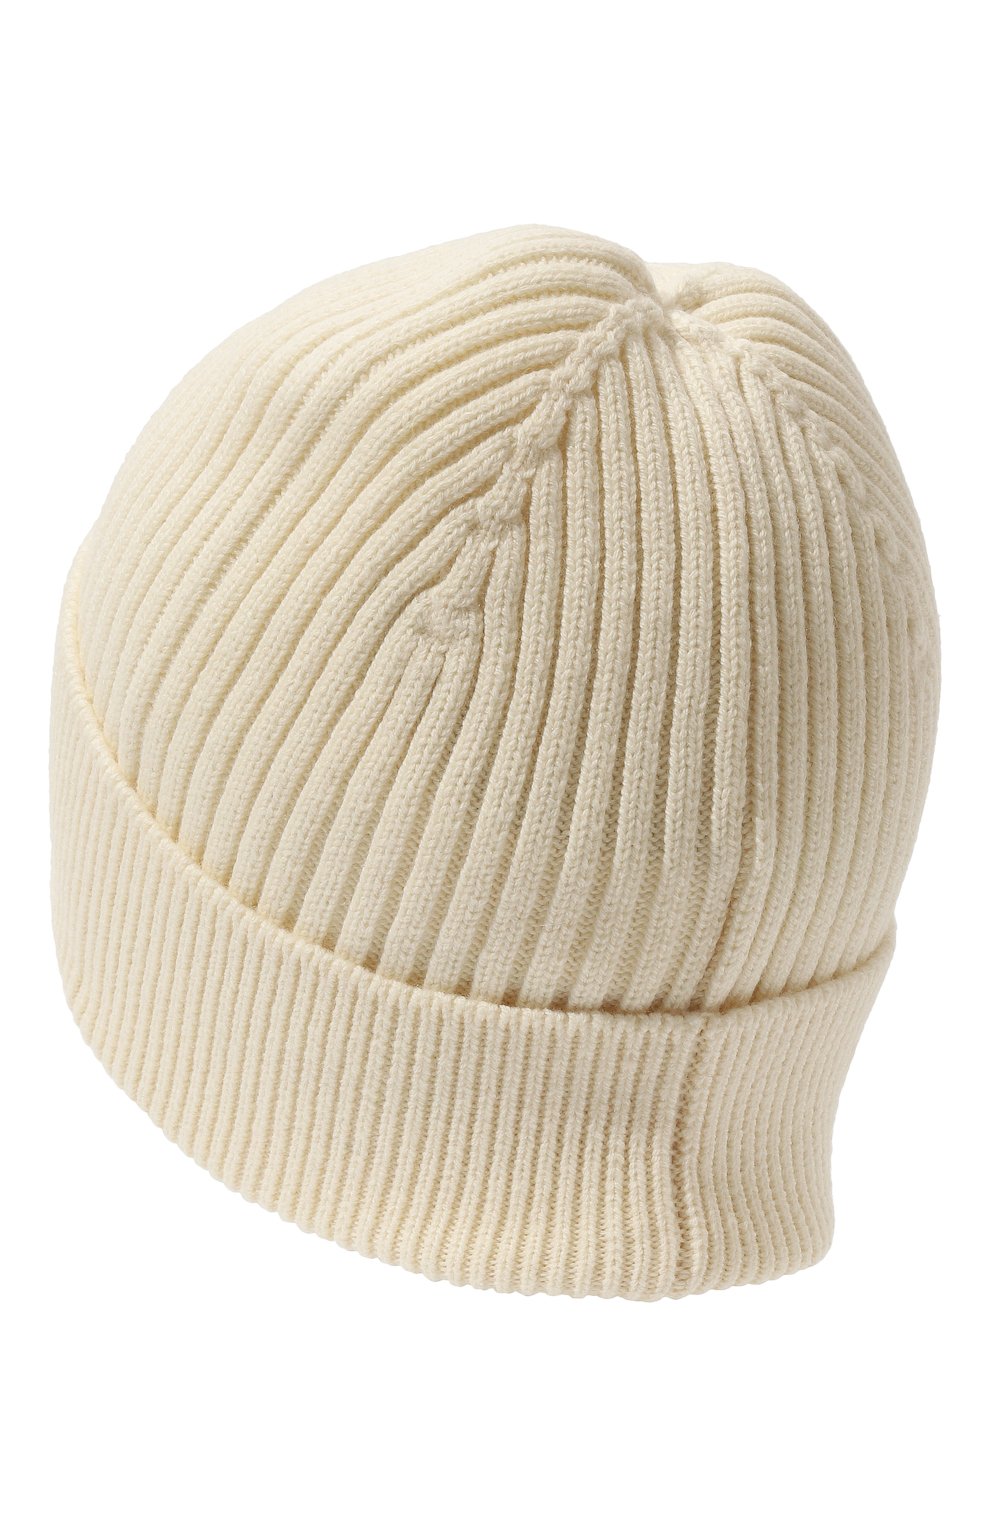 Купить шапку в Минске, зимние и вязаные шапки в интернет-магазине